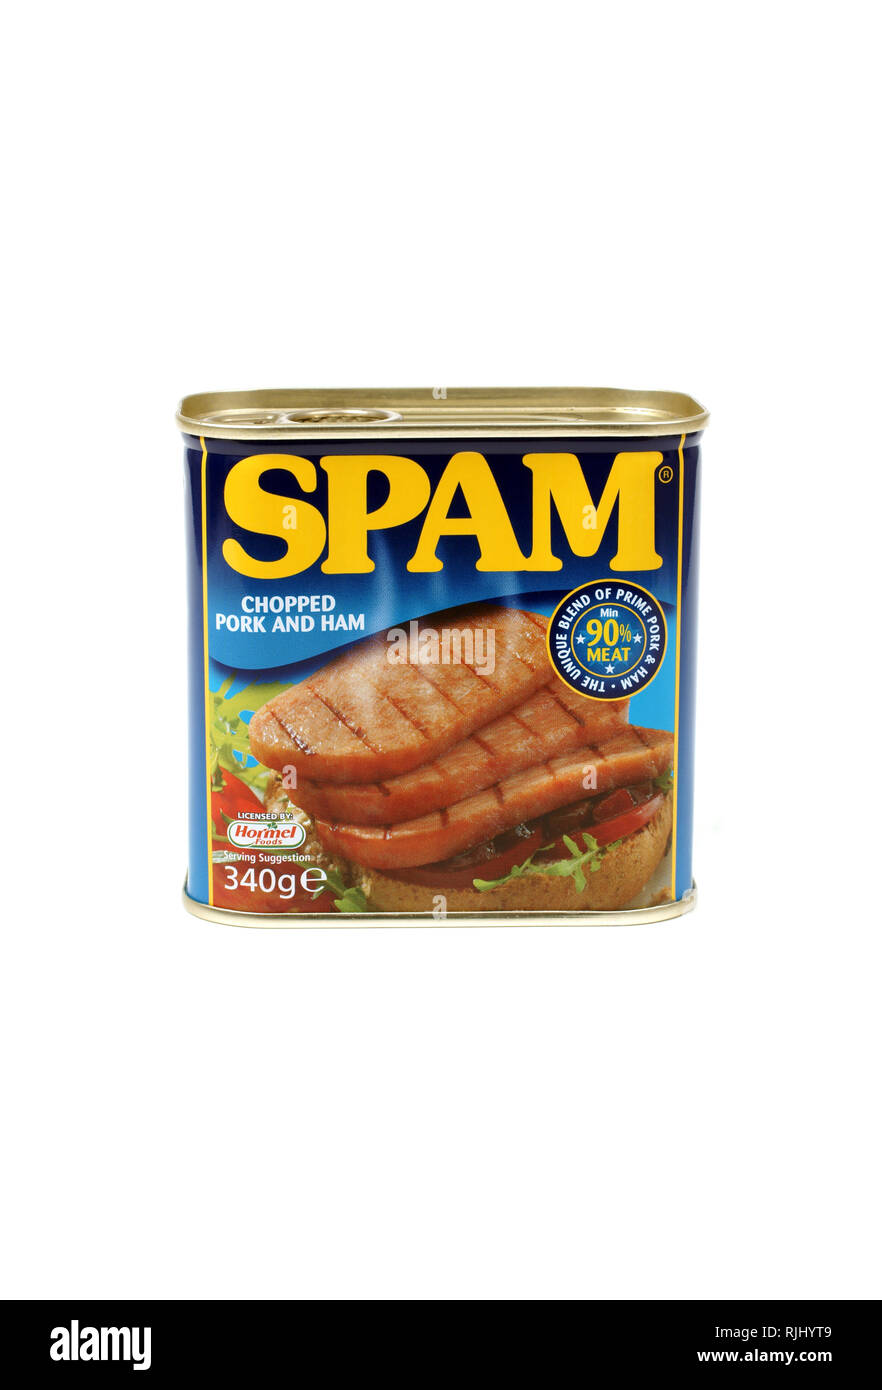 Lo spam un brand di conserve tritata precotta spalla di maiale con prosciutto introdotto nel 1937 dalla Hormel Foods Corporation nel 1937 Foto Stock